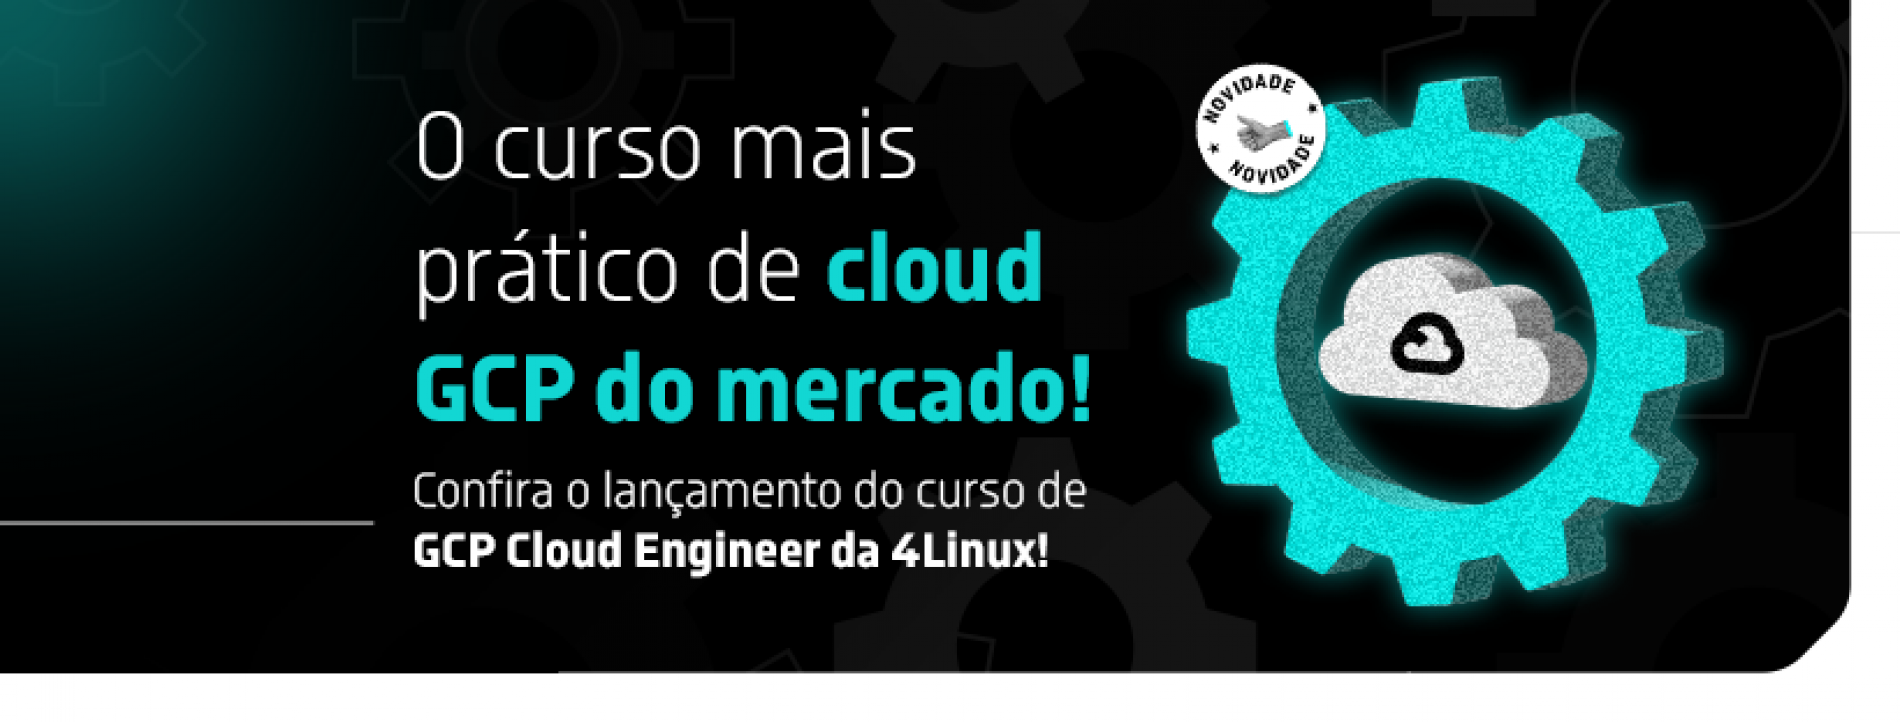 Domine a Google Cloud Platform e torne-se um profissional certificado com o curso GCP Cloud Engineer